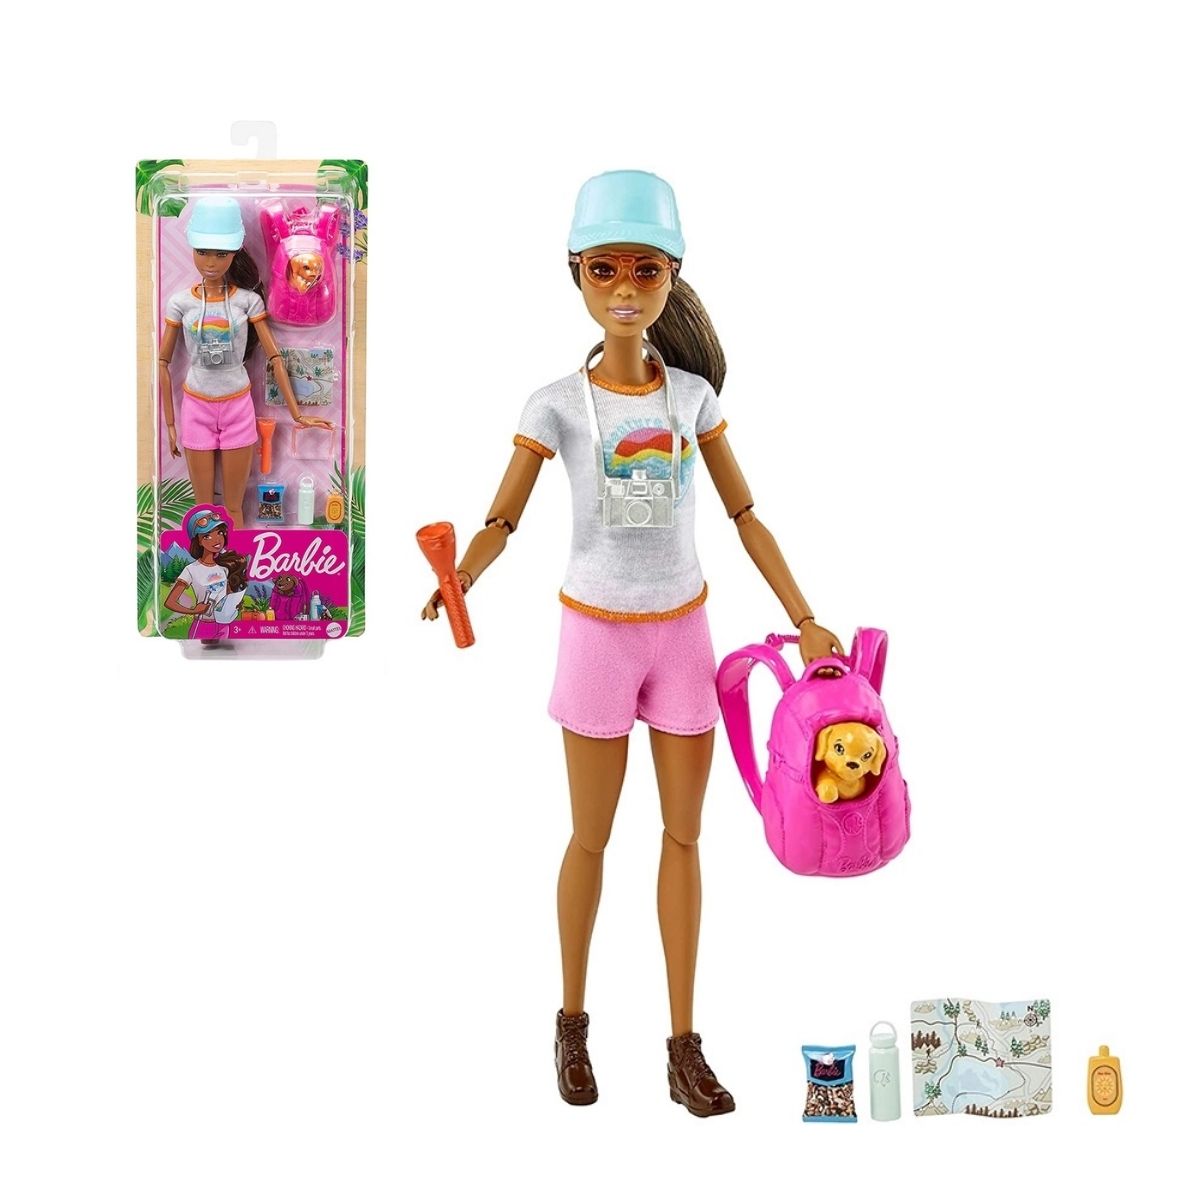 Barbie Fashionista Roupas e Acessorios Look Modelo 101 Fjf67 :  : Brinquedos e Jogos